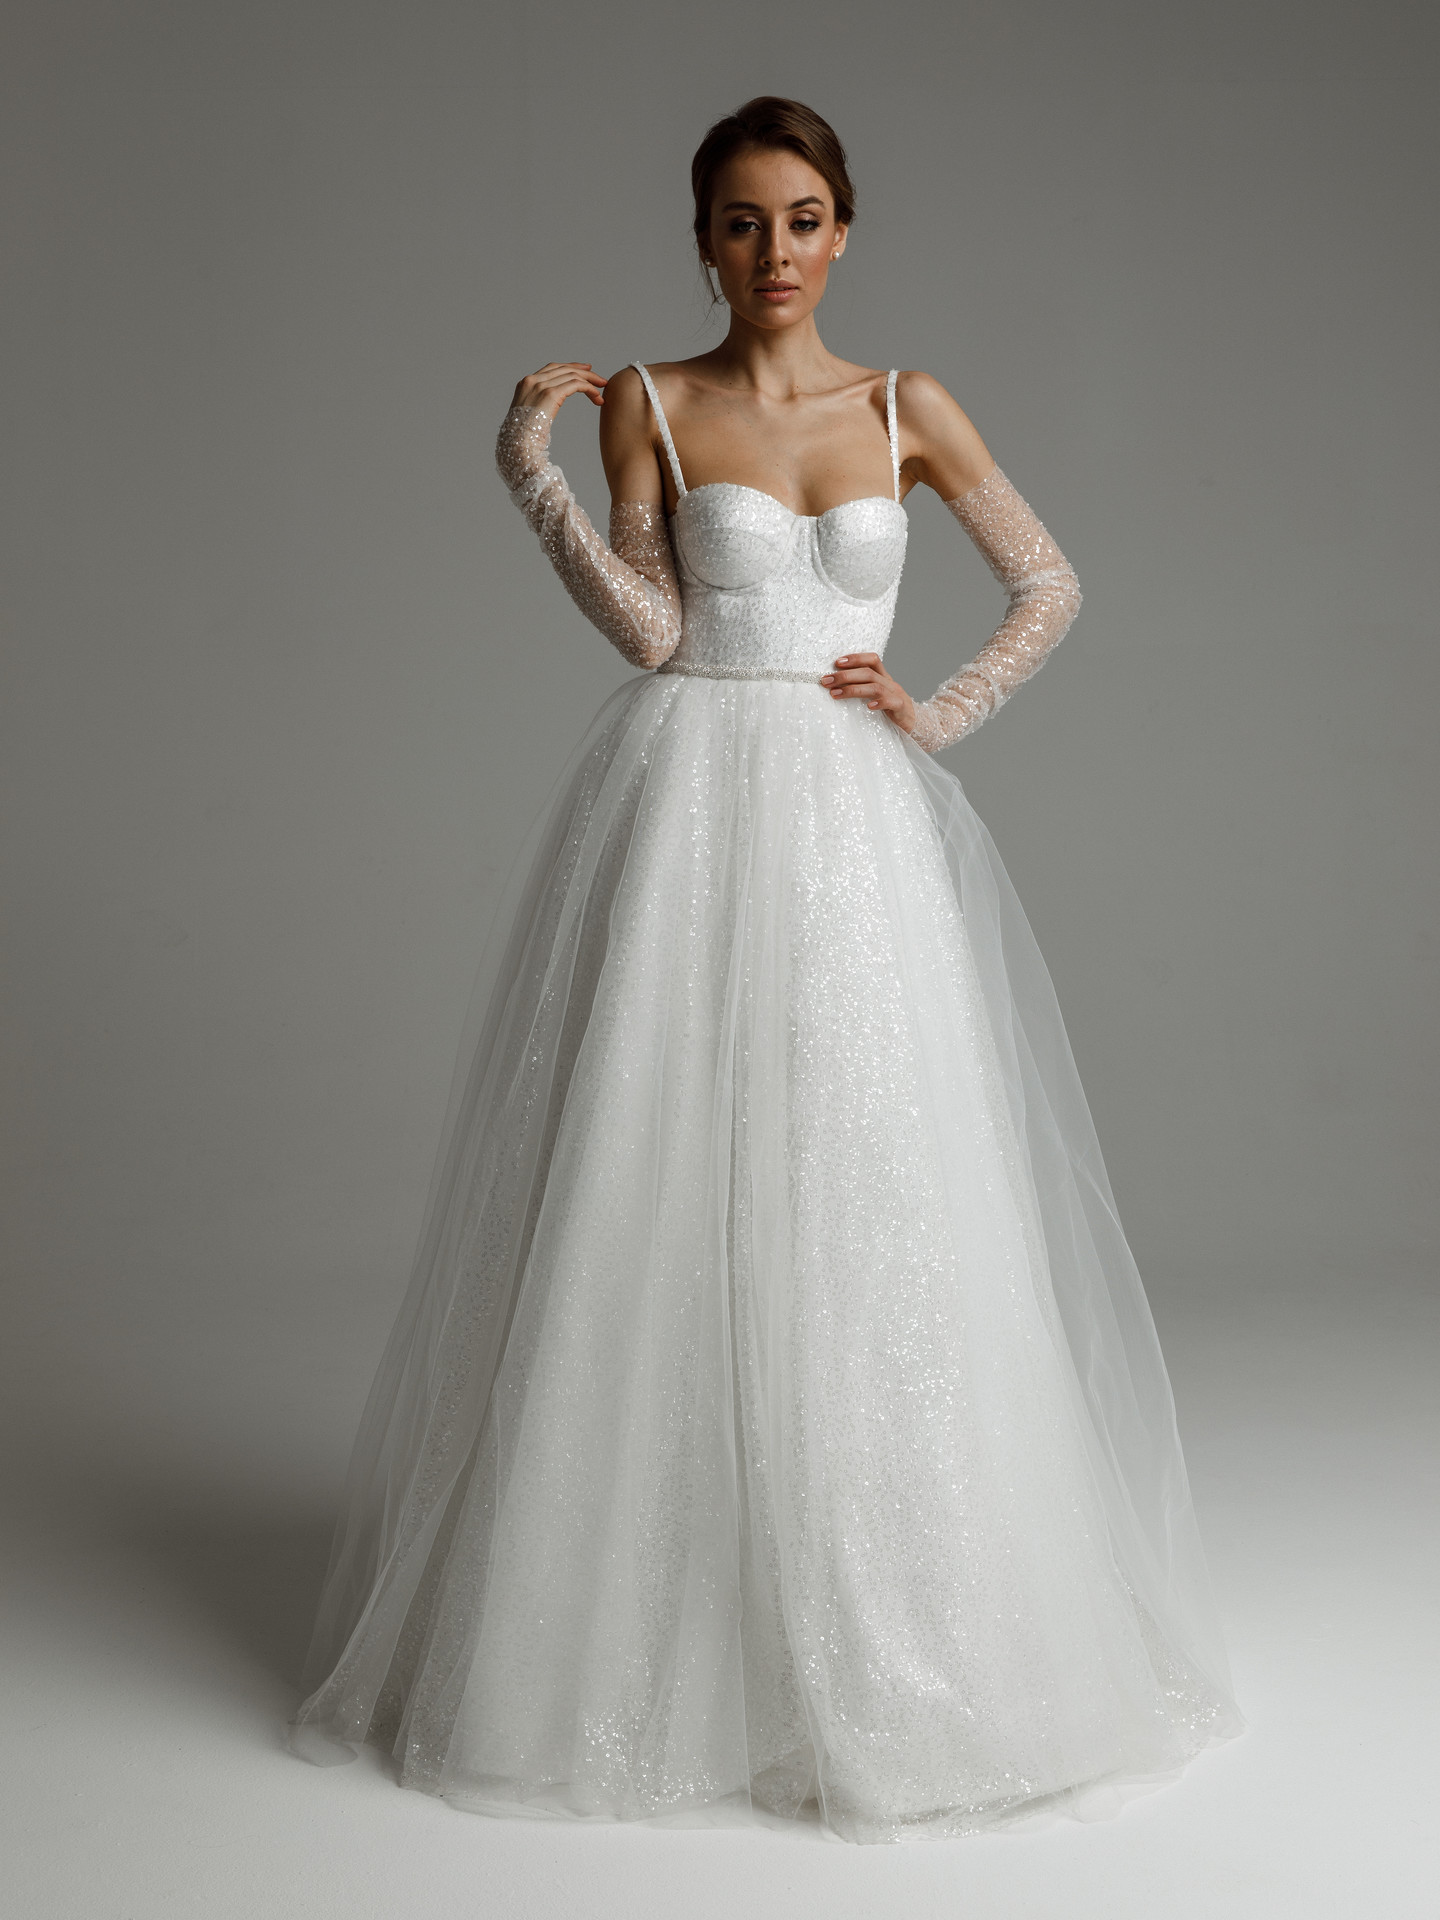 Платье Аврил, 2021, одежда, платье, свадебное, молочно-белый, Аврил, А-силуэт, вышивка, шнуровка, архив